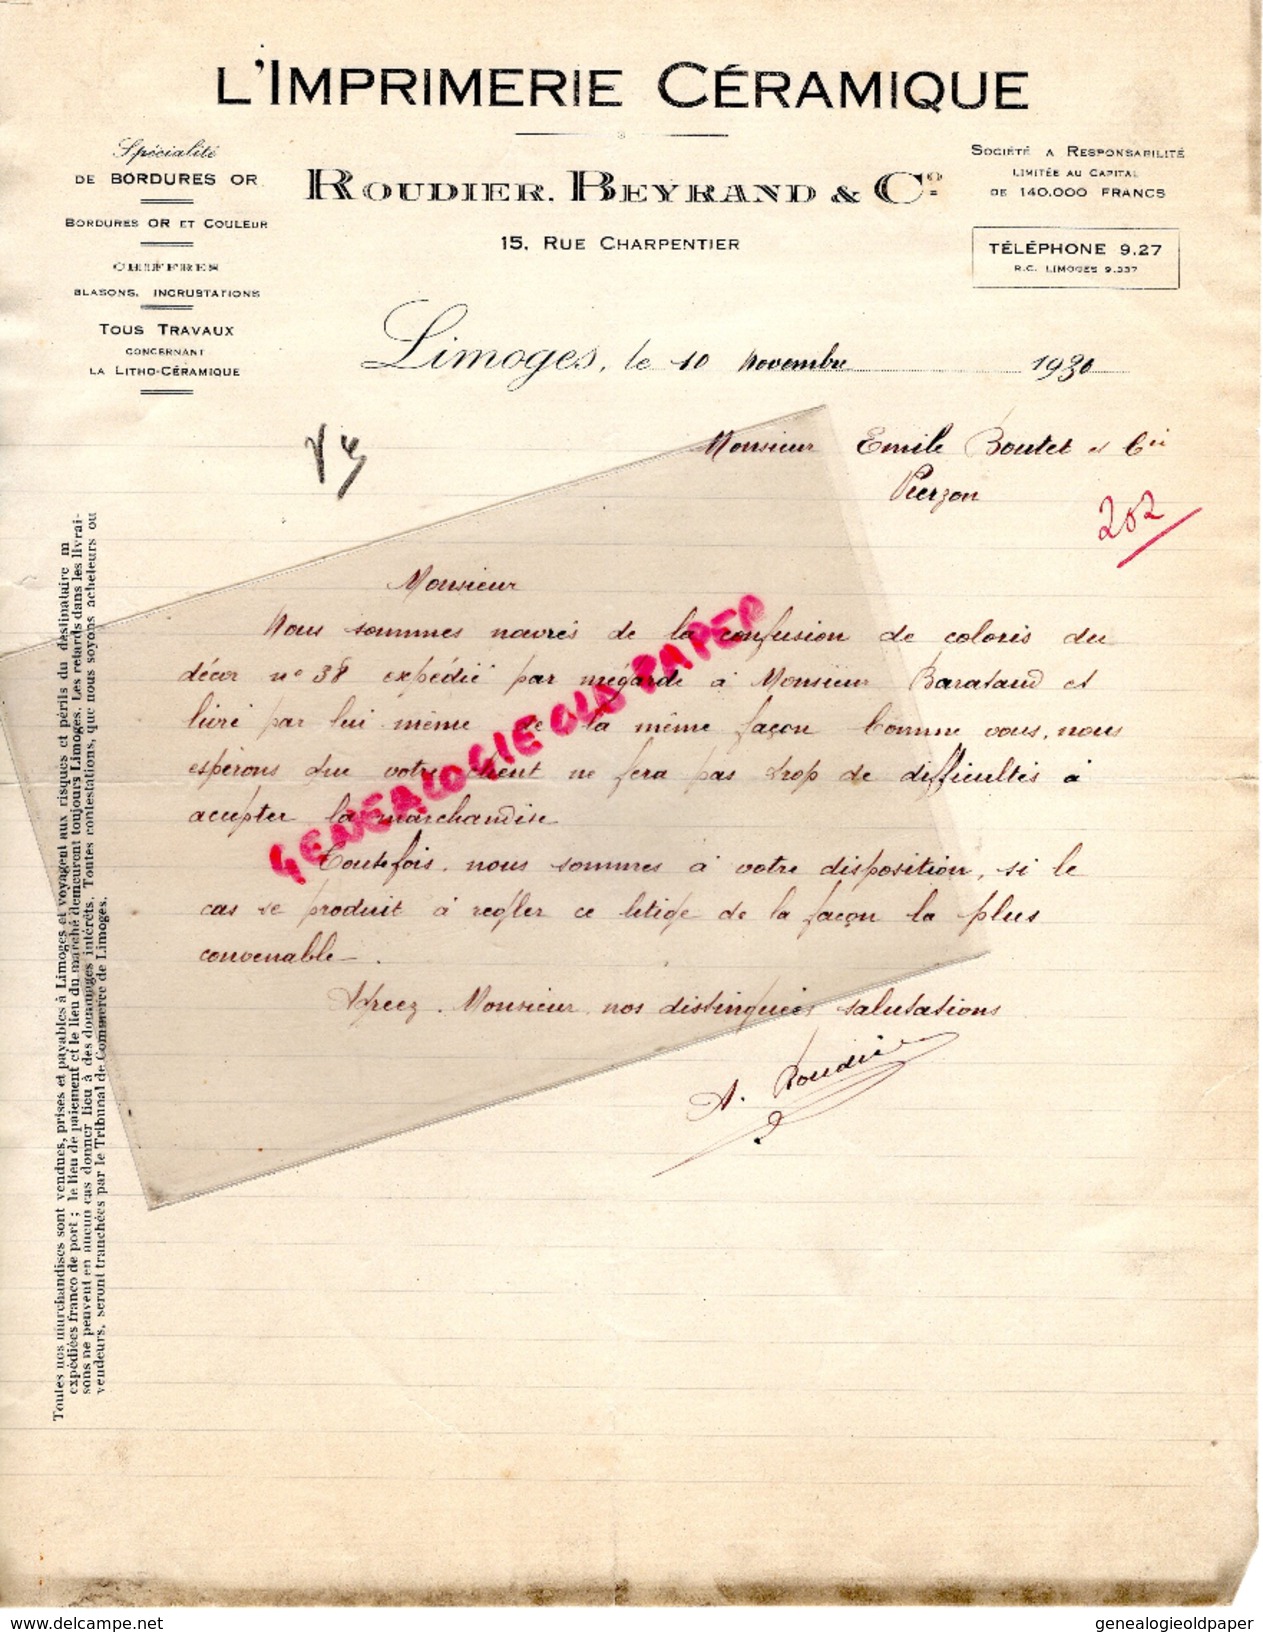 87 - LIMOGES- FACTURE L' IMPRIMERIE CERAMIQUE-ROUDIER BEYRAND -15 RUE CHARPENTIER- 1930 - Imprimerie & Papeterie